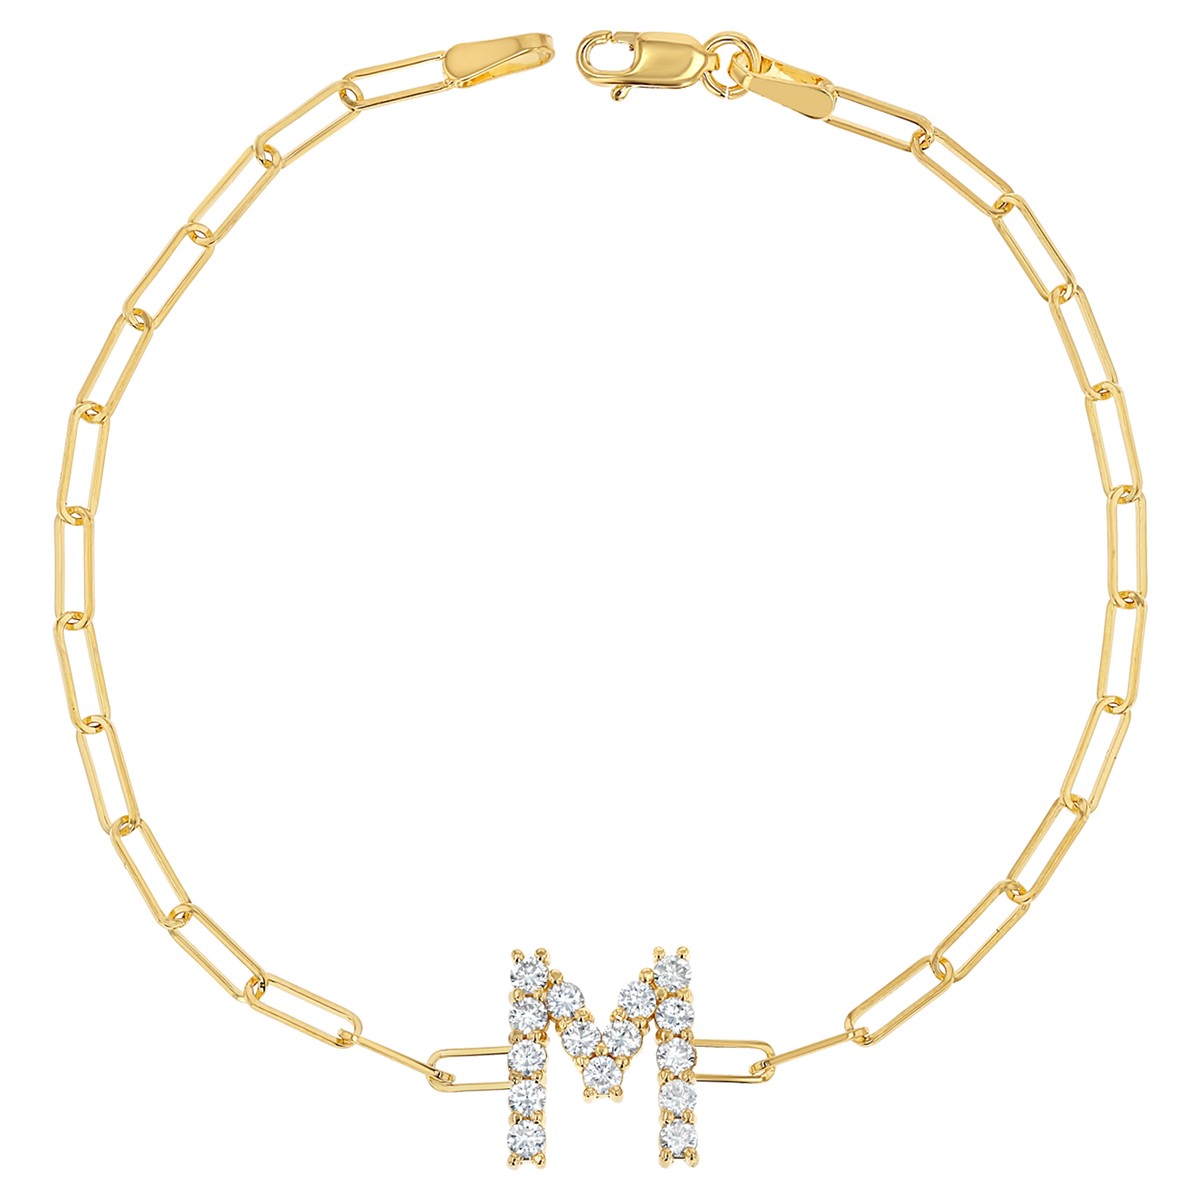 gold bracelet letter m